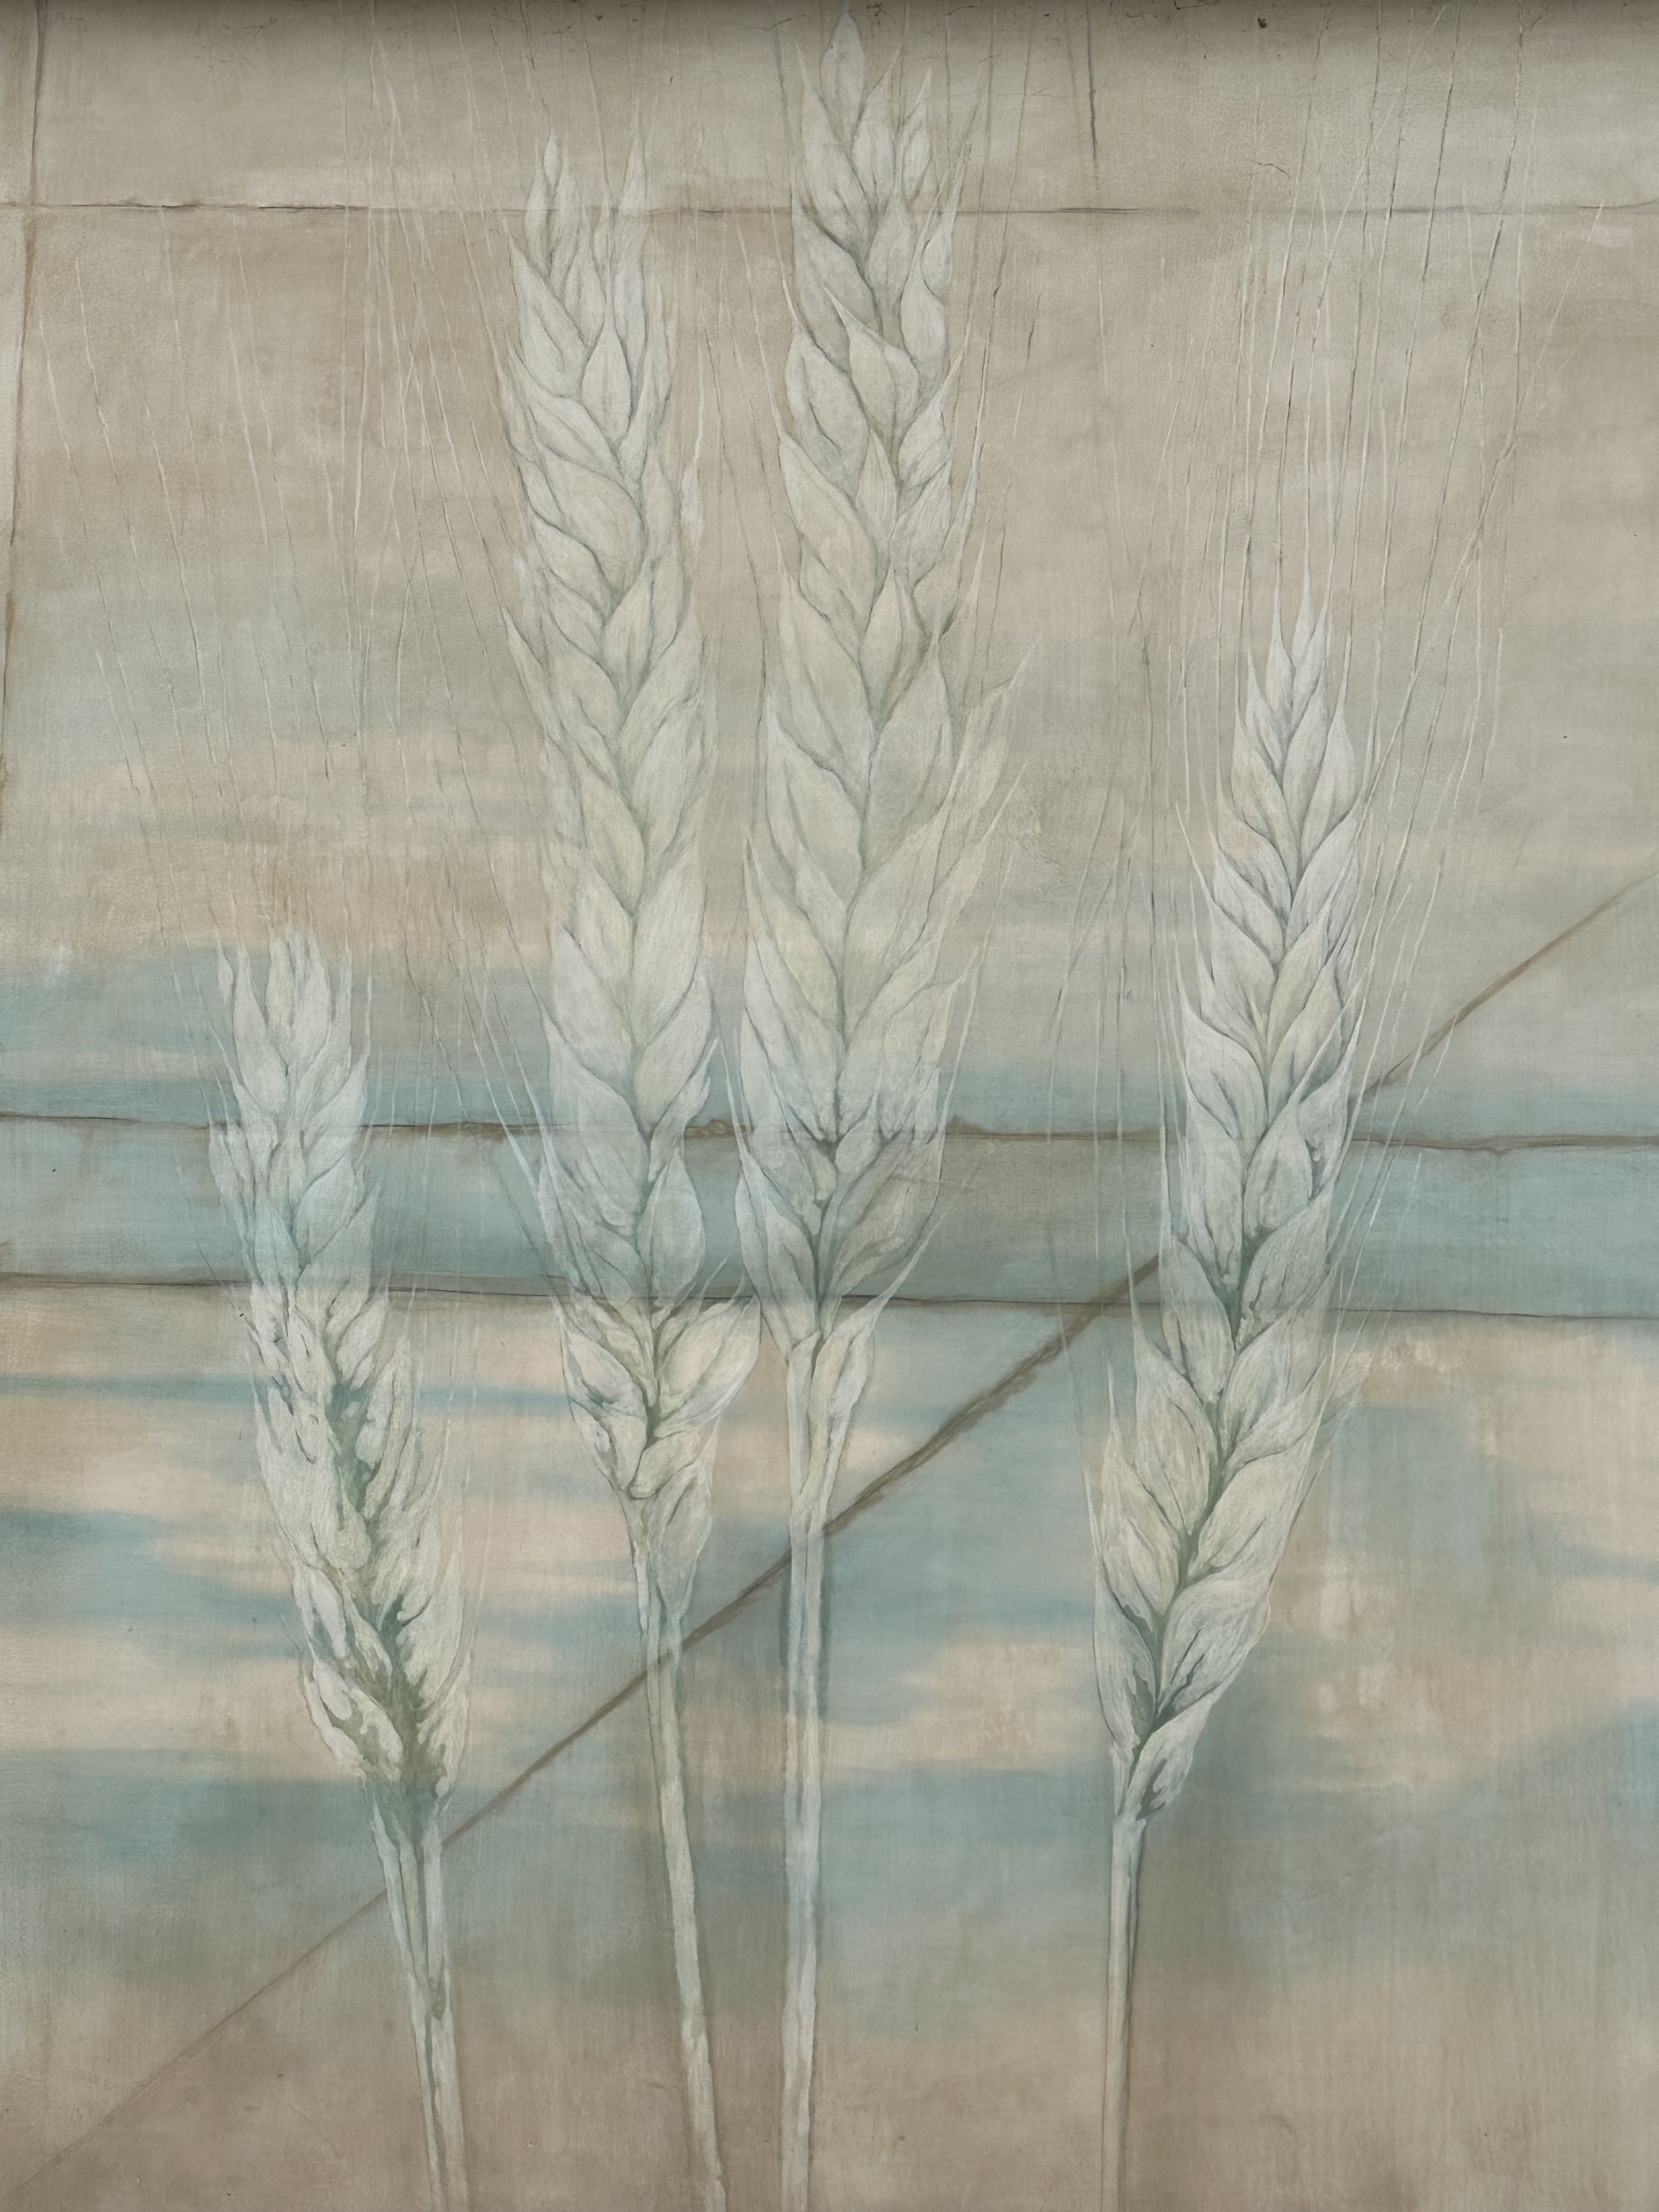 Il grano è un particolare della facciata della cantina Podere sabbioni